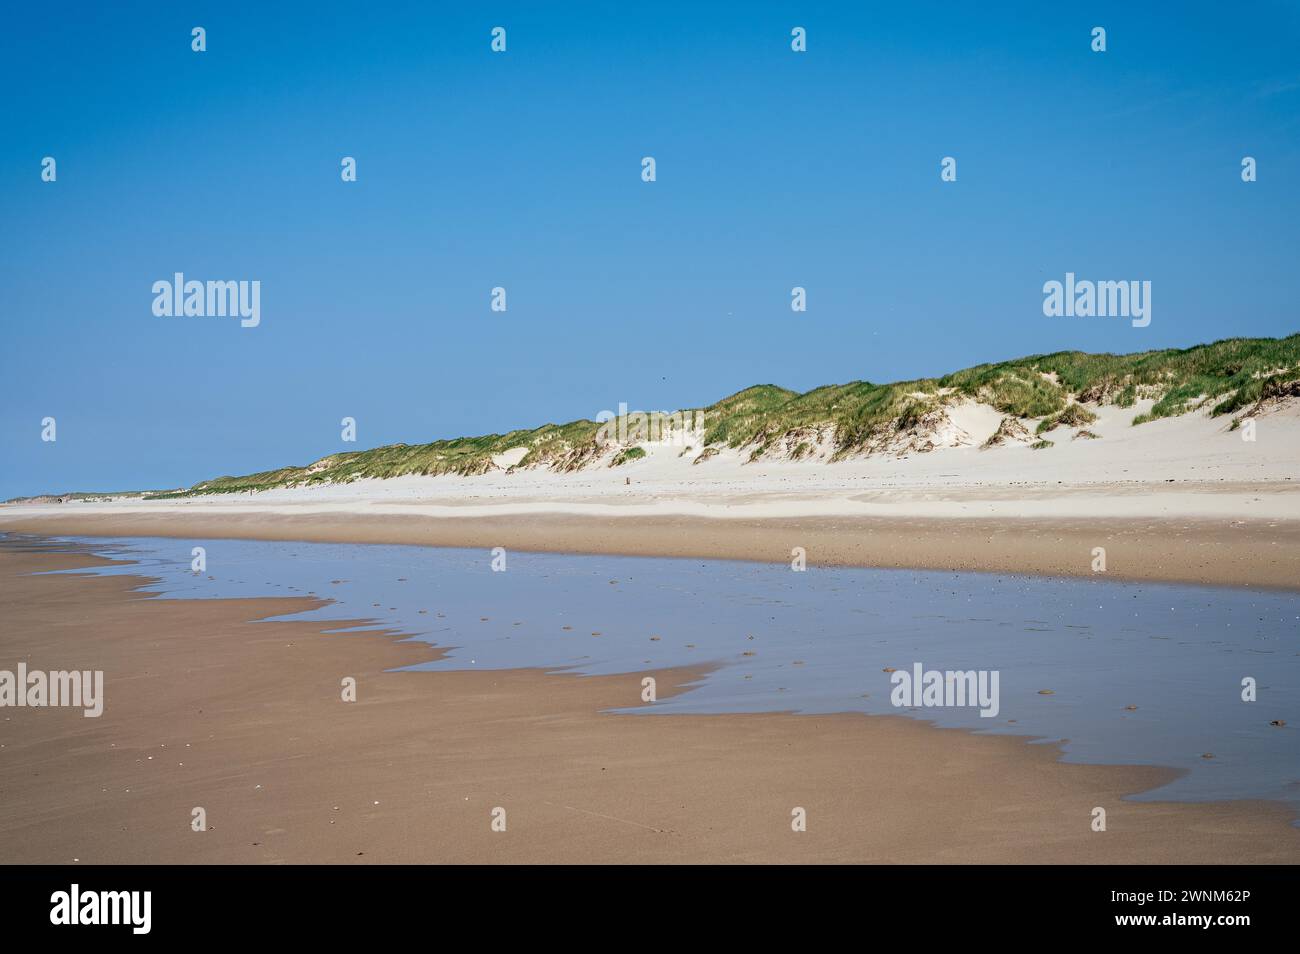 Scène de plage tranquille avec des dunes de sable sous un ciel bleu clair, Texel, Noord-Holland, pays-Bas Banque D'Images